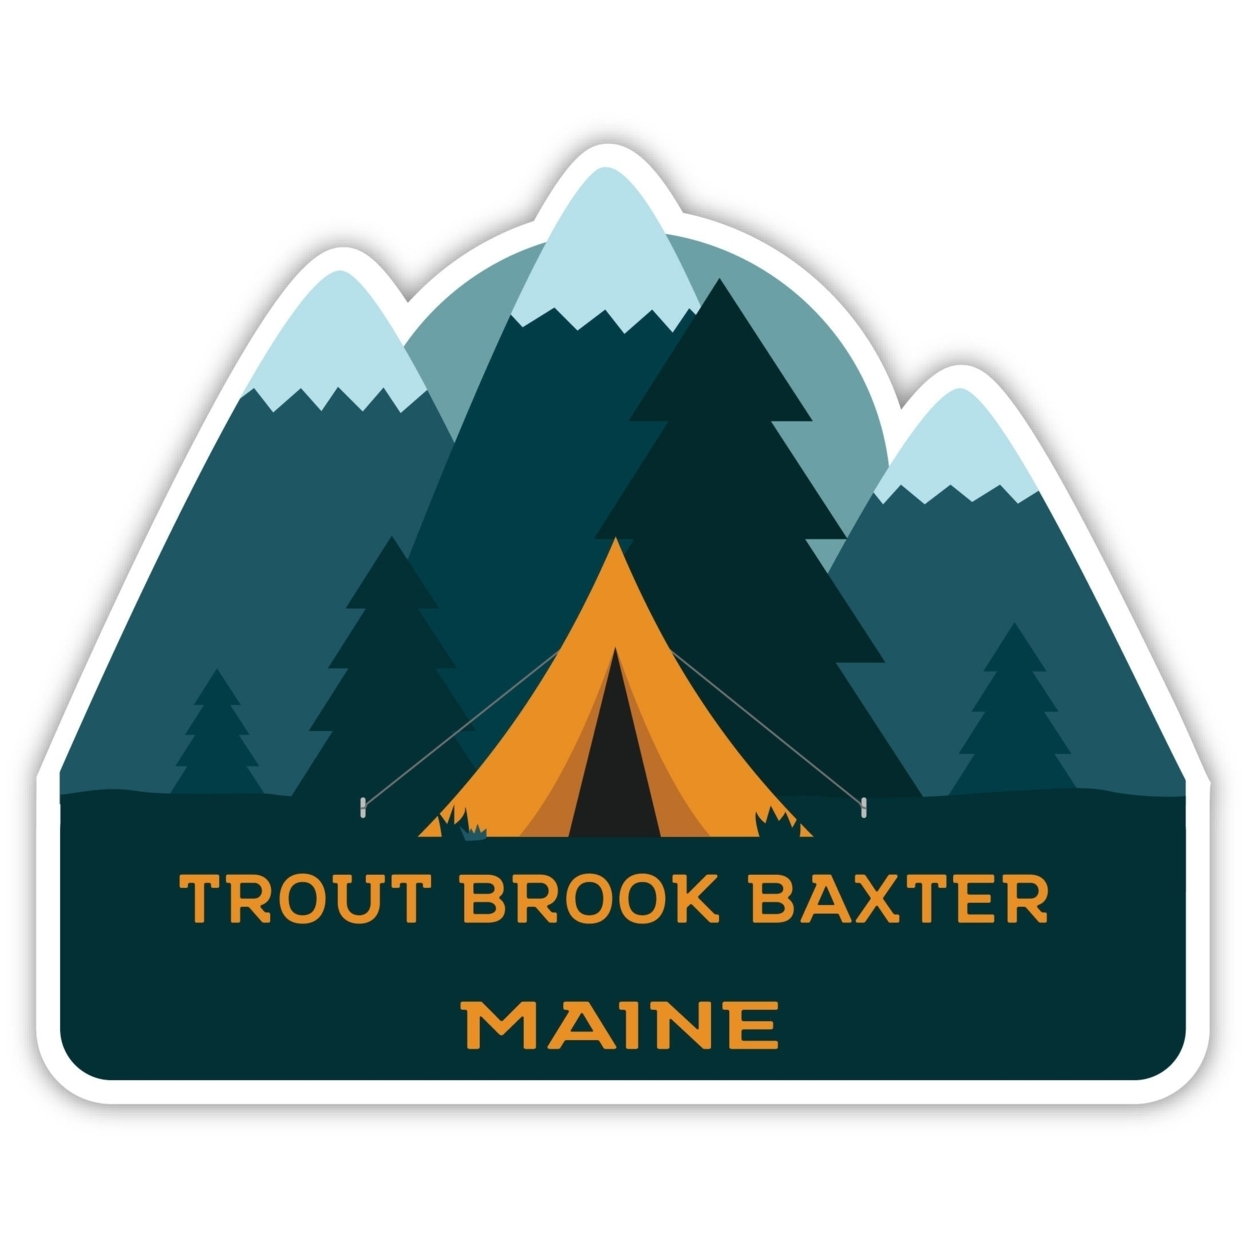 Trout Brook Baxter Maine Souvenir Decorative Stickers (Choose Theme And Size) - Single Unit, 4-Inch, Tent